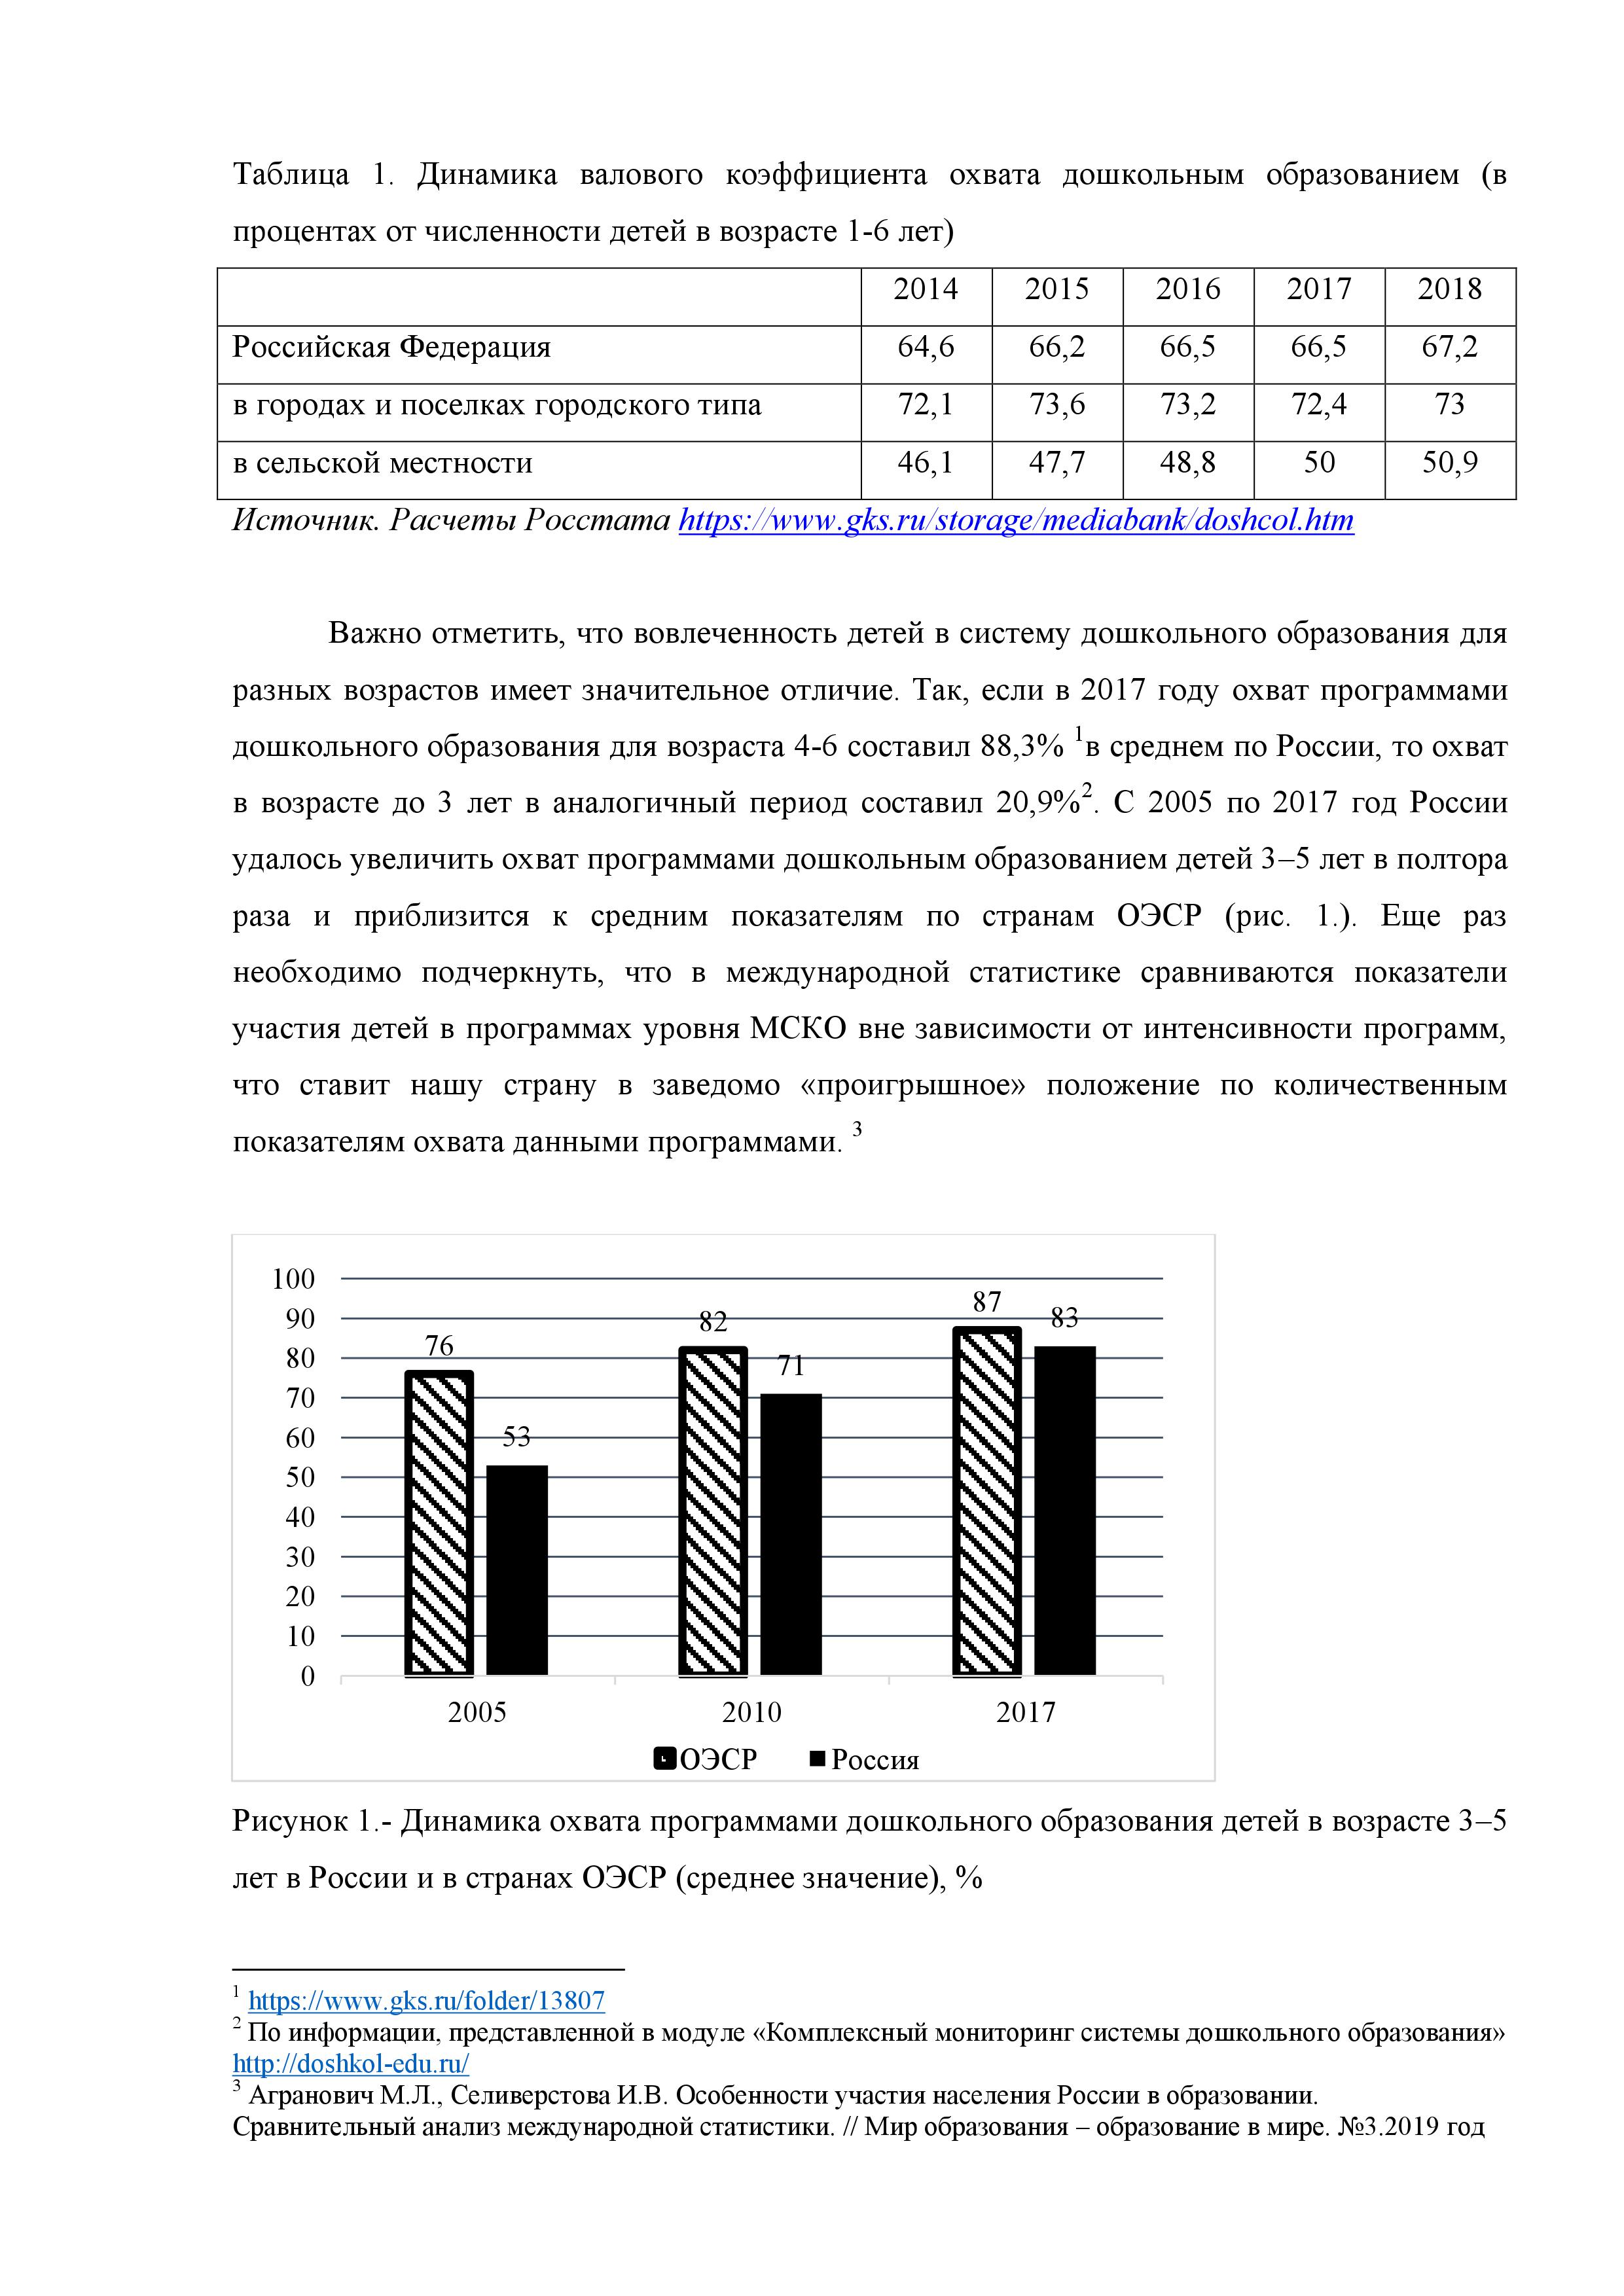 Угрозы, возможности и перспективы развития системы дошкольного образования Российской Федерации до 2035 г. - фото 3